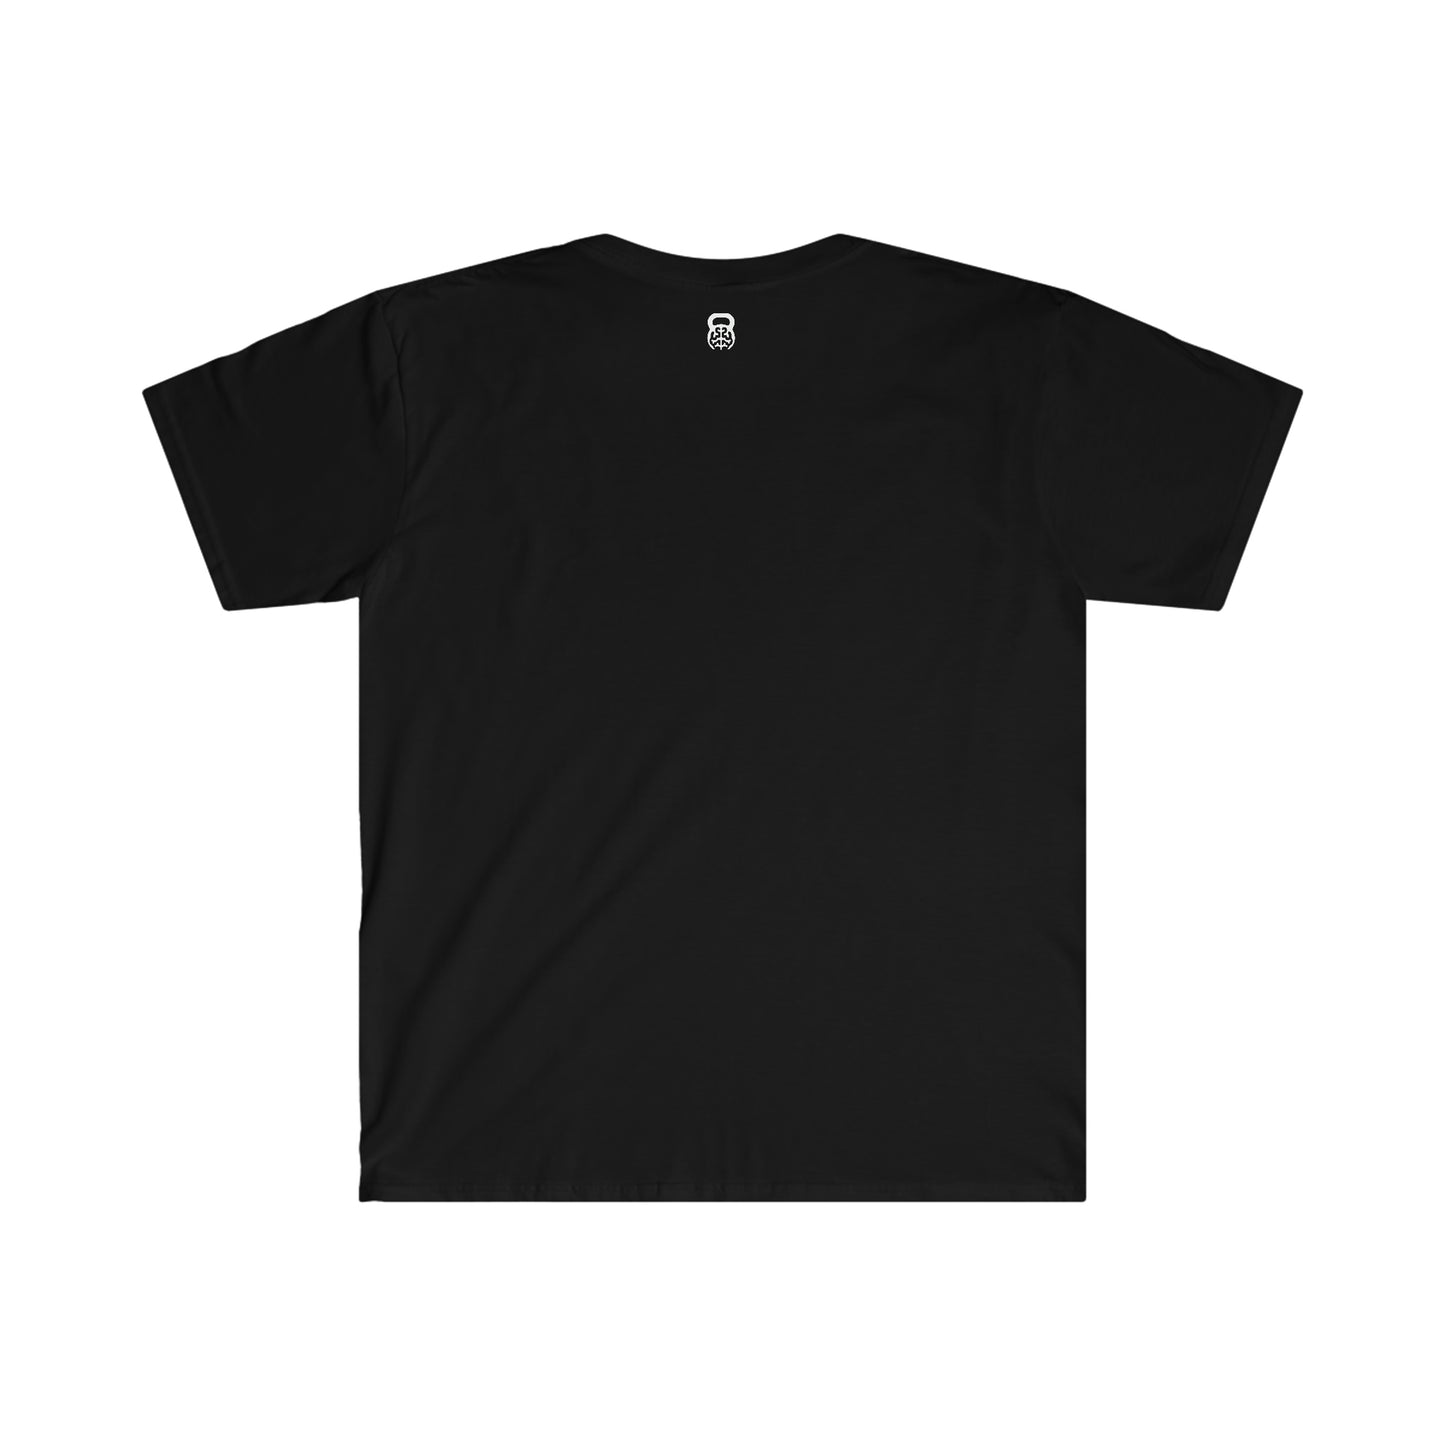 "Don't Quit" IDology Unisex Softstyle T-Shirt